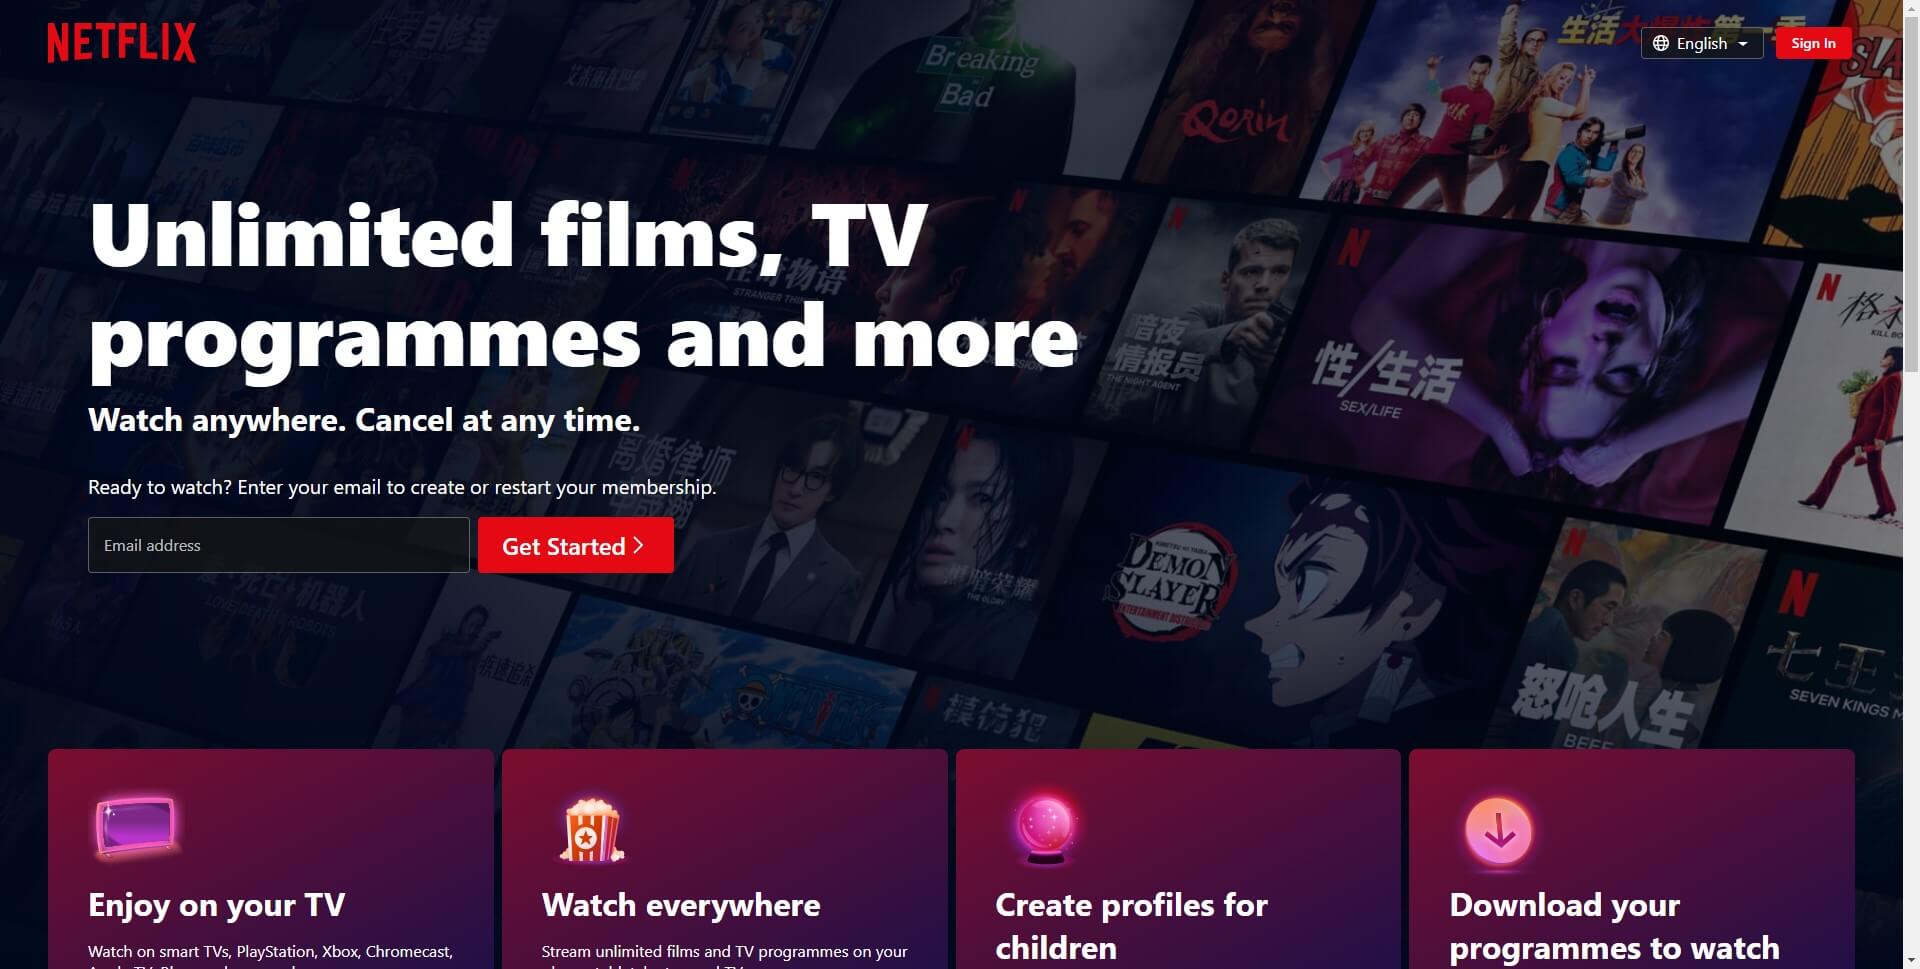 website header design example- Netflix.